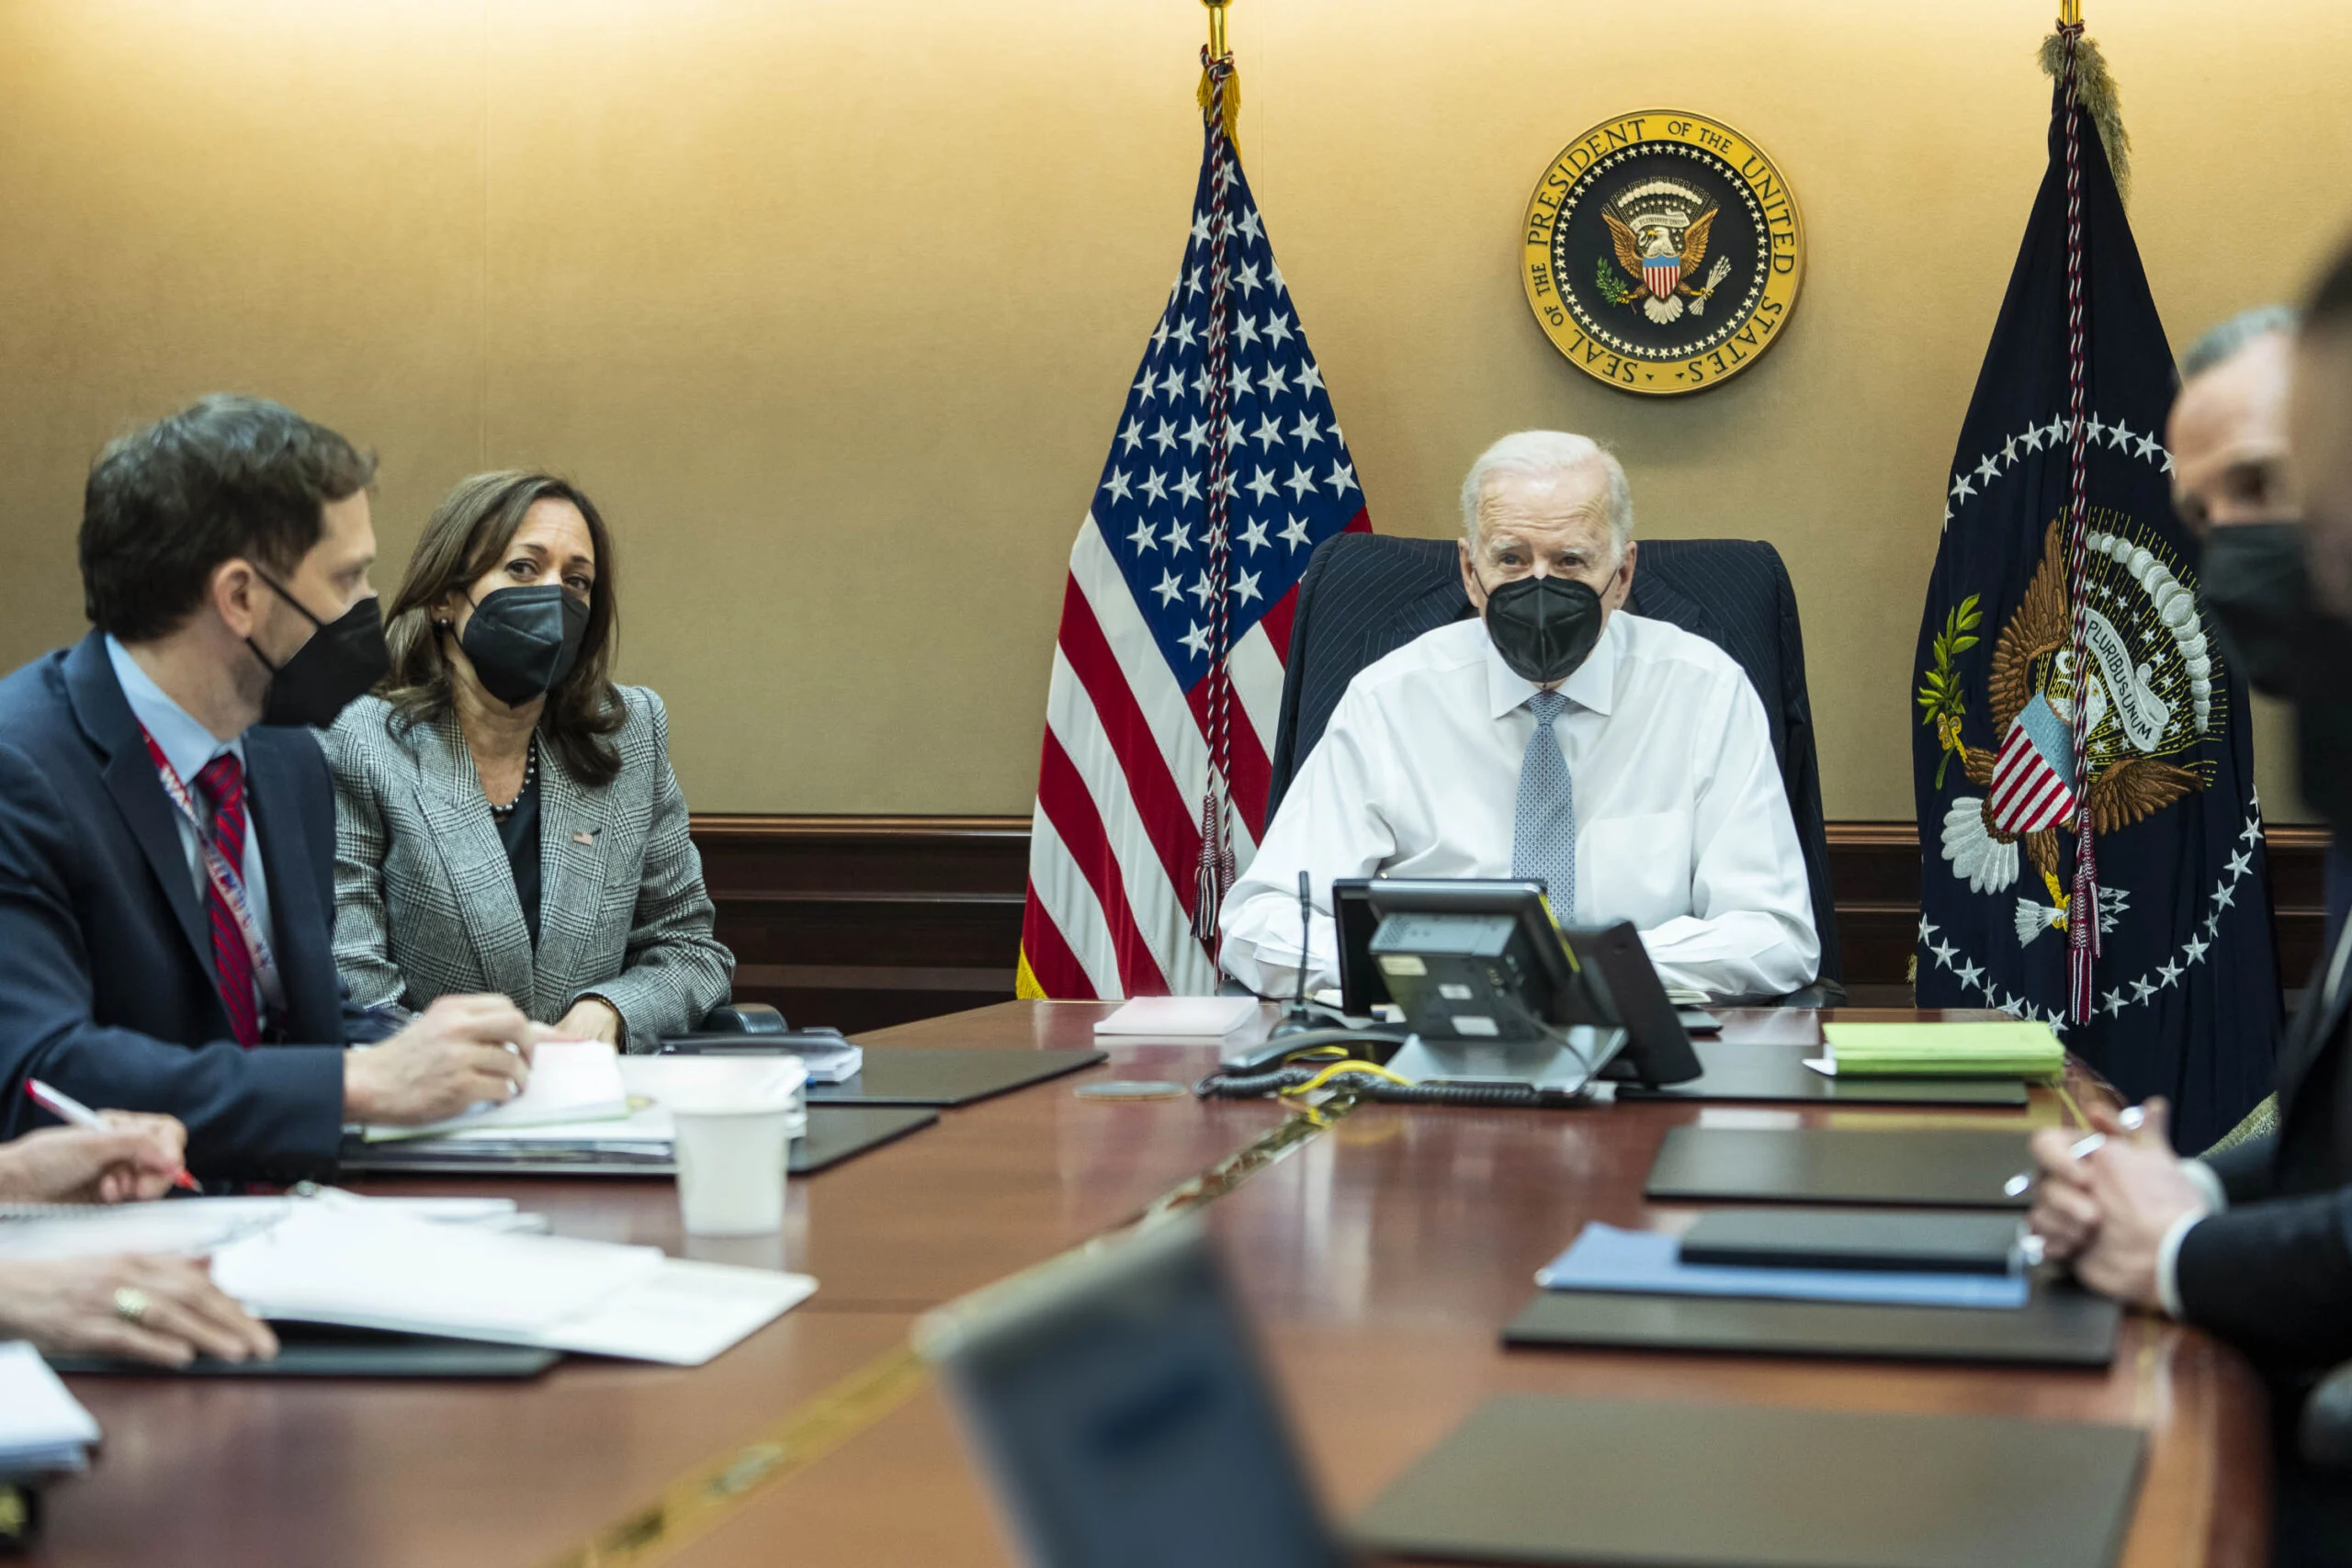 הנשיא ג'ו ביידן וסגניתו קמלה האריס בחדר המצב בעת מבצע חיסולו של מנהיג דאעש